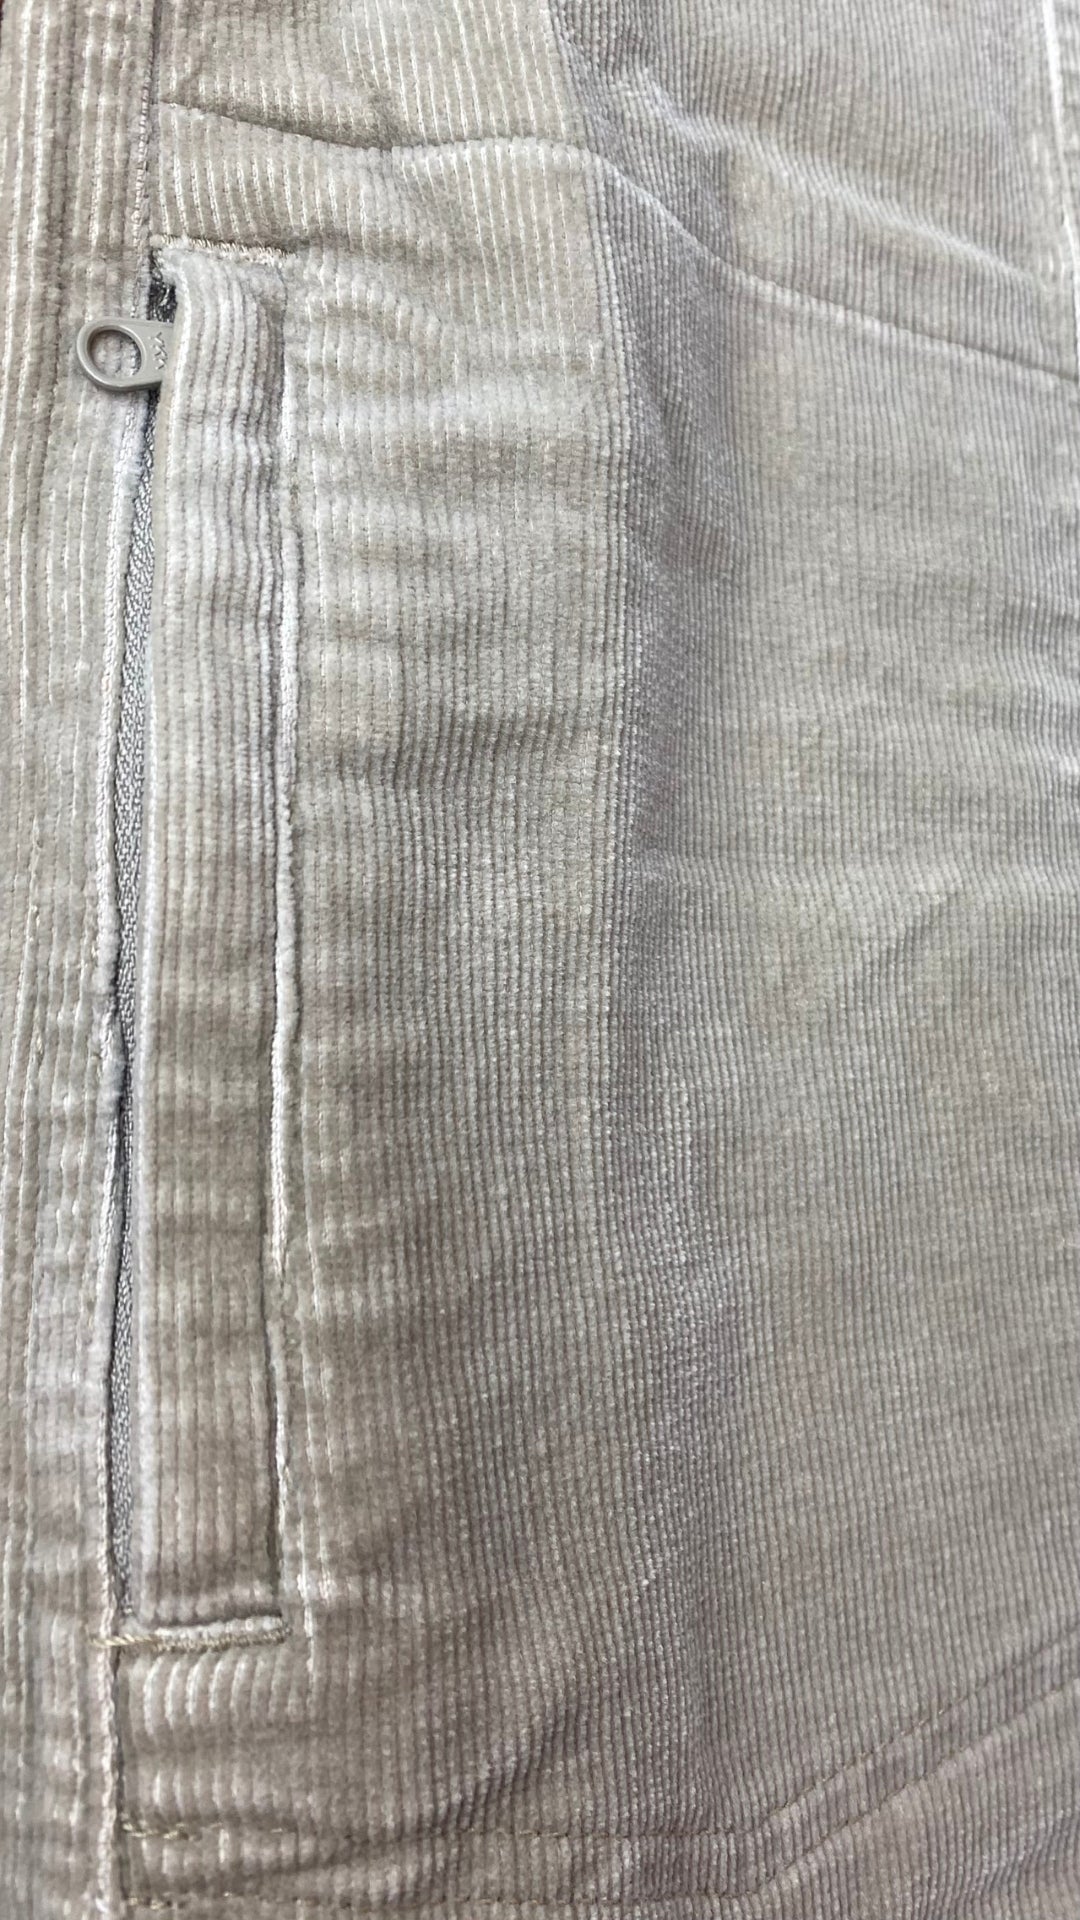 Jupe sable en velours côtelé extensible Woolrich, taille 6. Vue de la poche zippée.